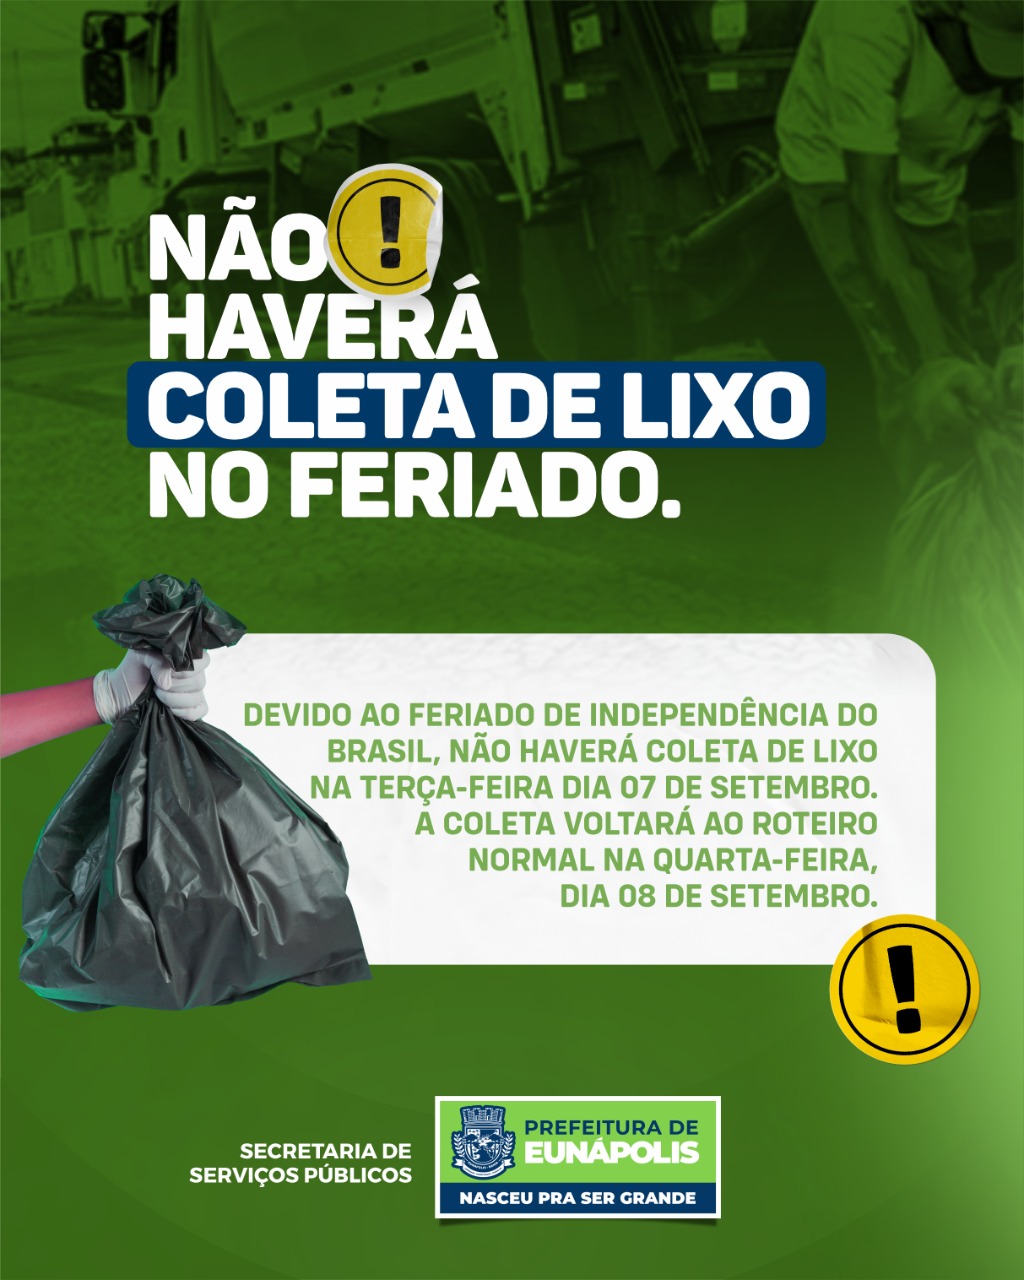 Prefeitura de Eunápolis avisa que não haverá coleta de lixo nesta terça-feira (07 de Setembro) 16